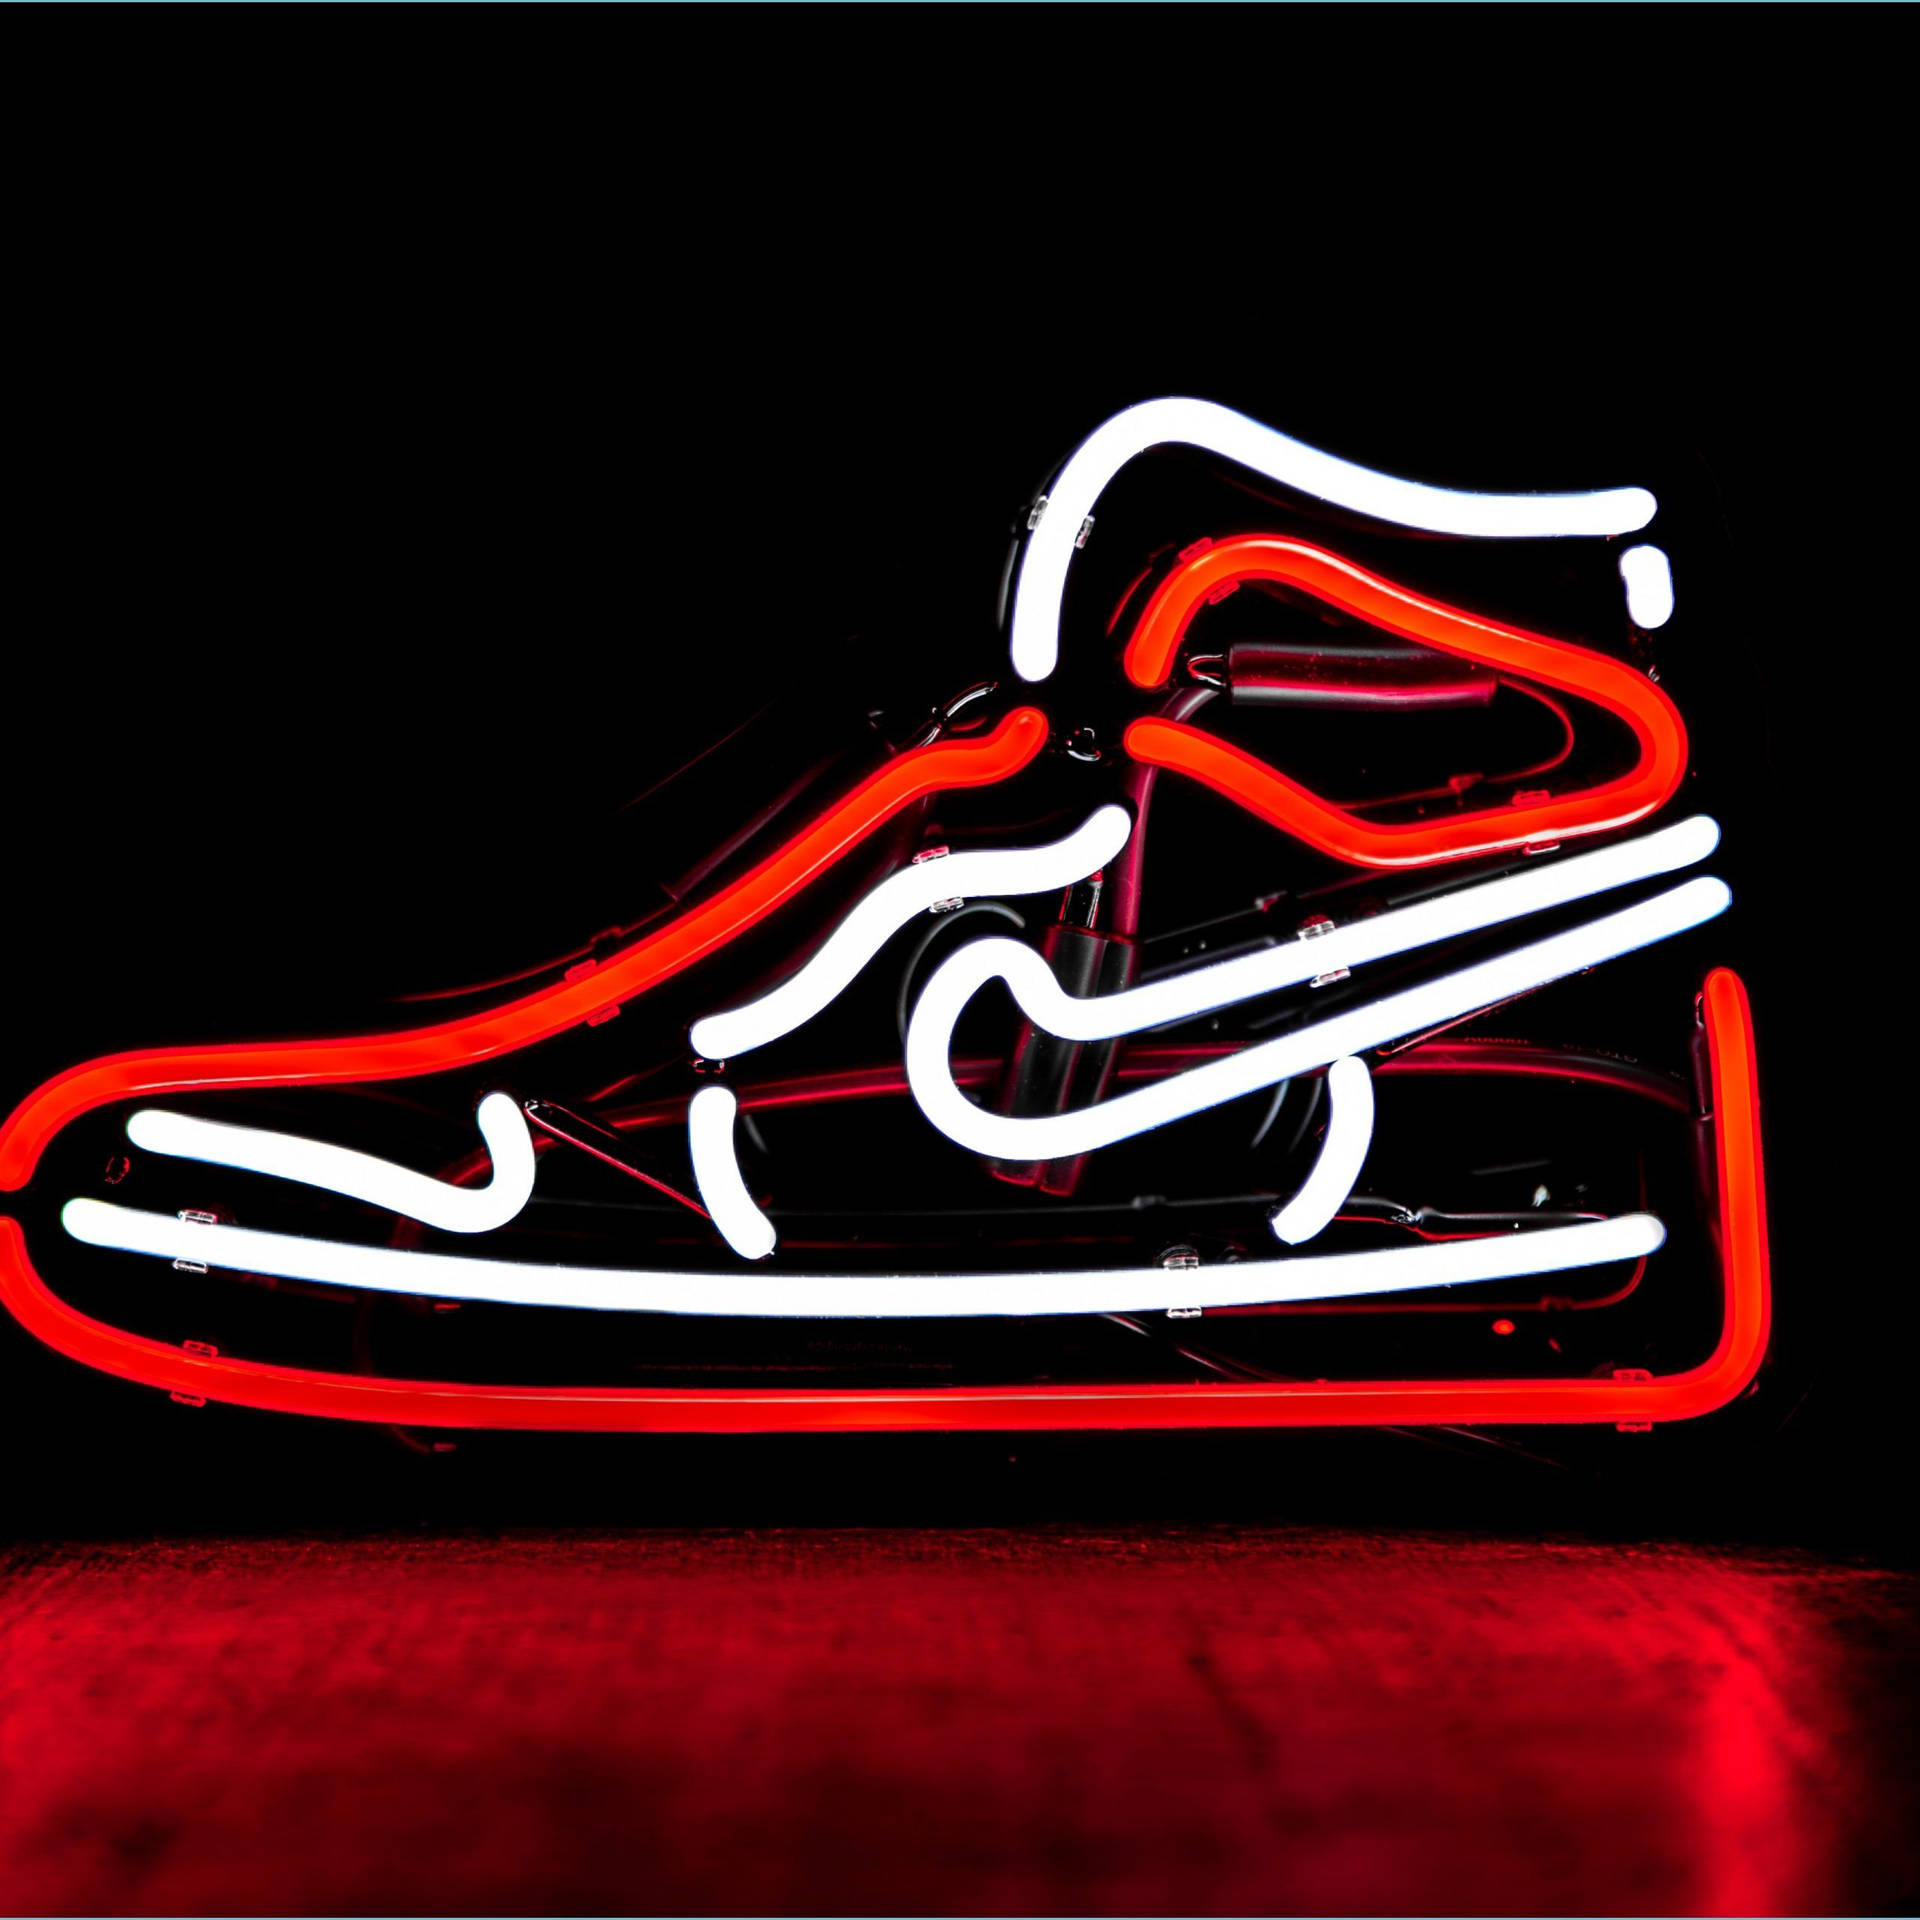 Føl kraften med det seje Nike-sko tapet. Wallpaper